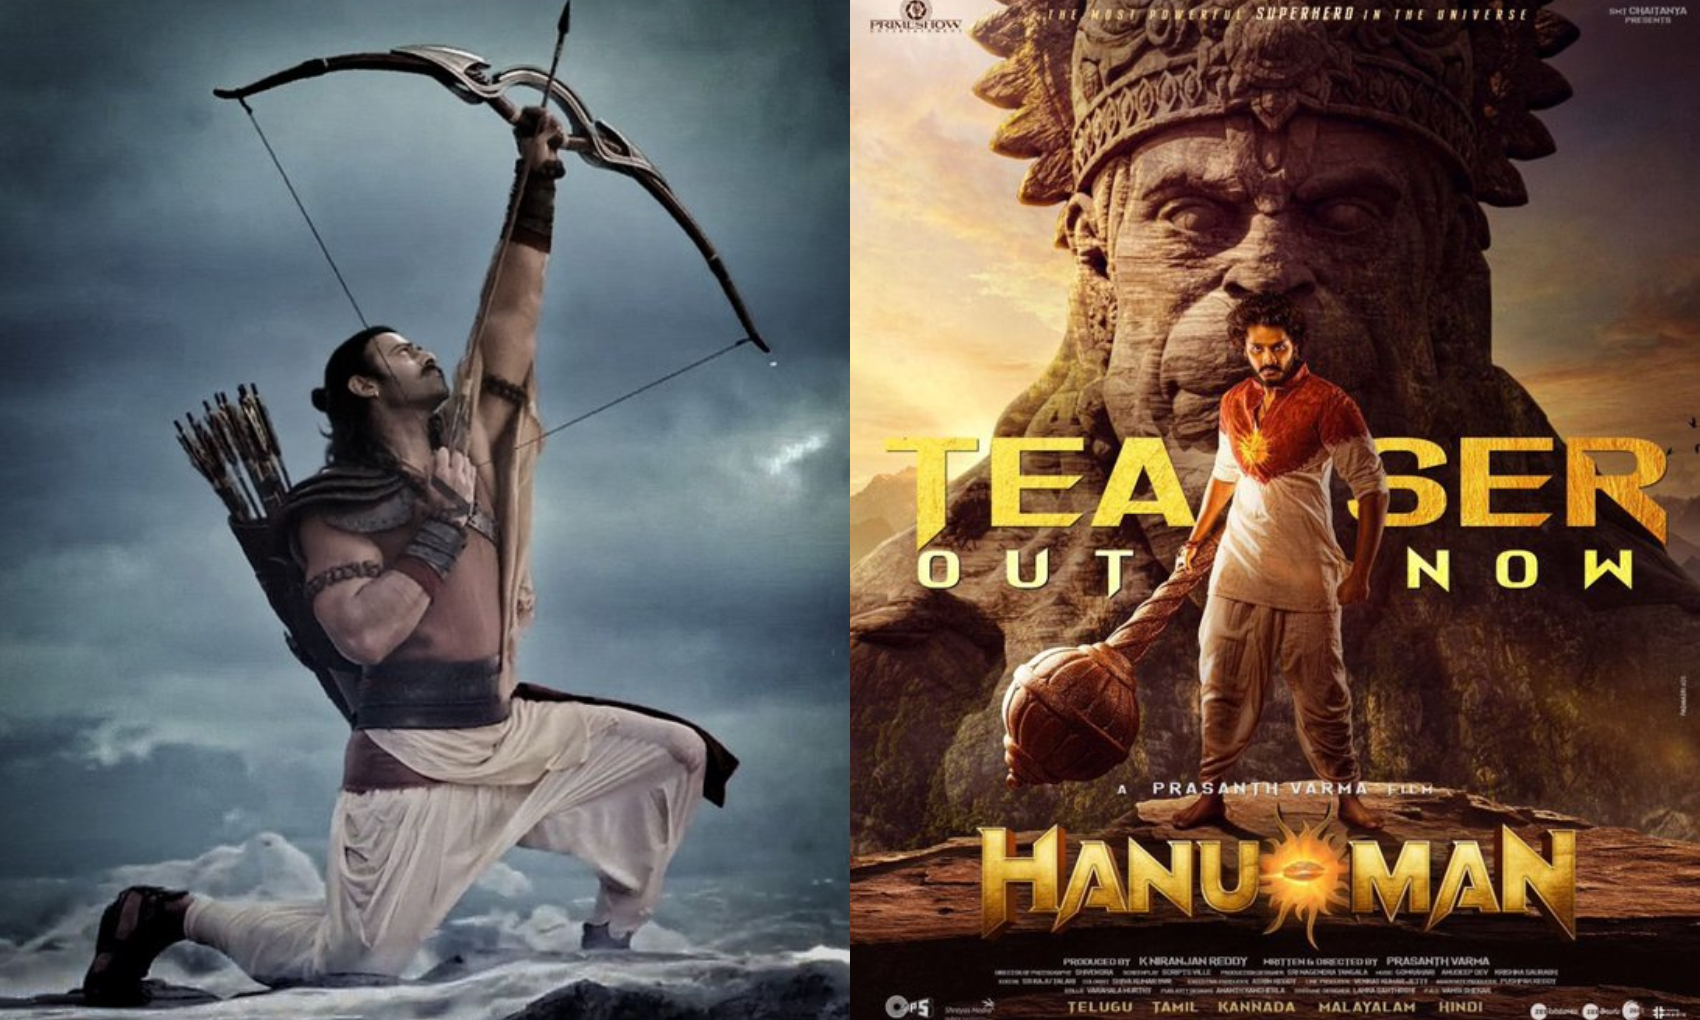 HanuMan: साउथ फिल्म ‘हनुमान’ की हुई बॉलीवुड फिल्म ‘आदिपुरुष’ से तुलना, सोशल मीडिया पर फैंस के बीच छिड़ी जंग